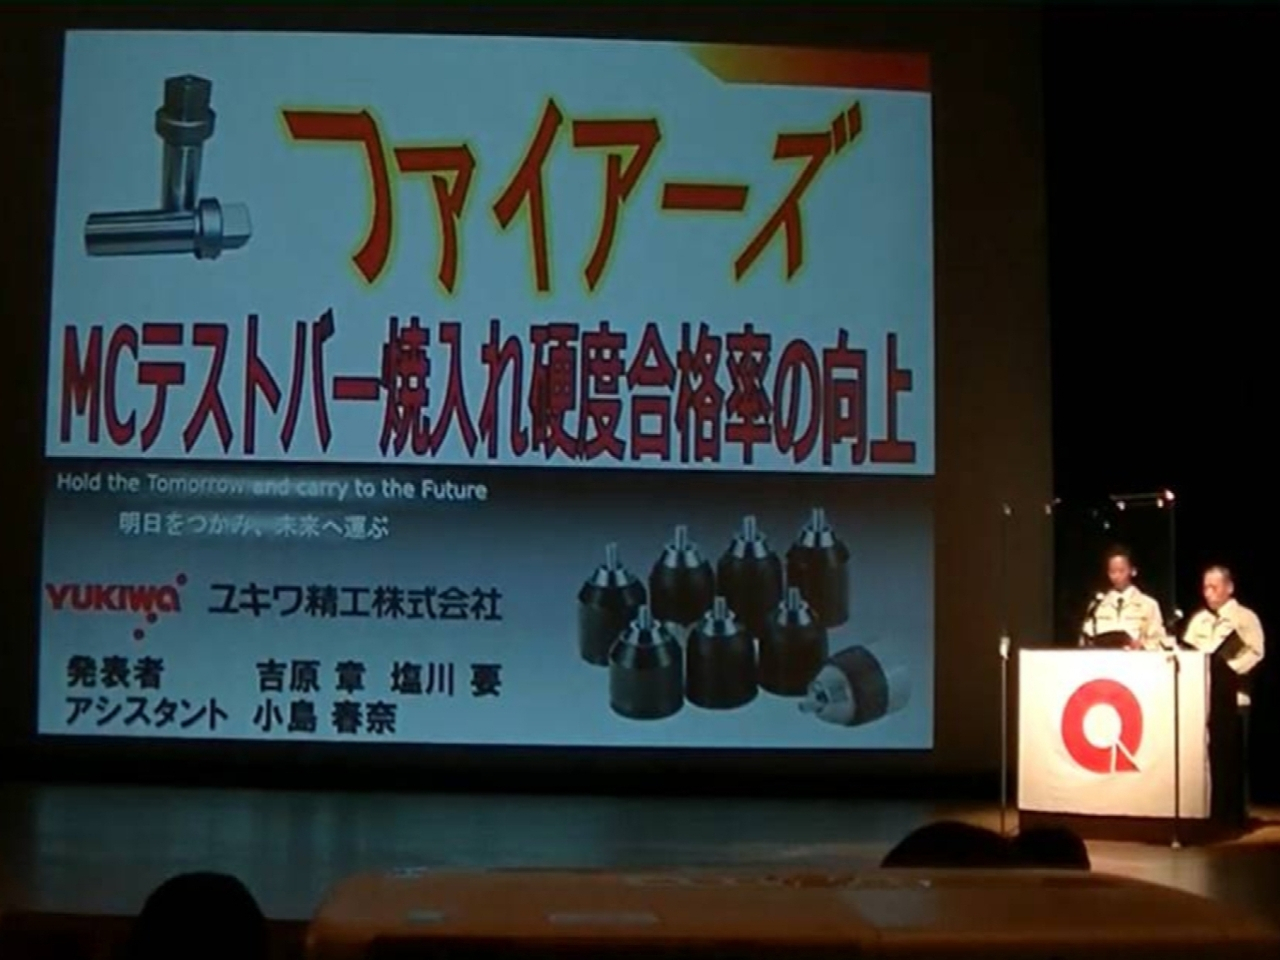 新潟地区QC発表大会にて「ファイアーズ」サークルが優秀賞を受賞しました。1